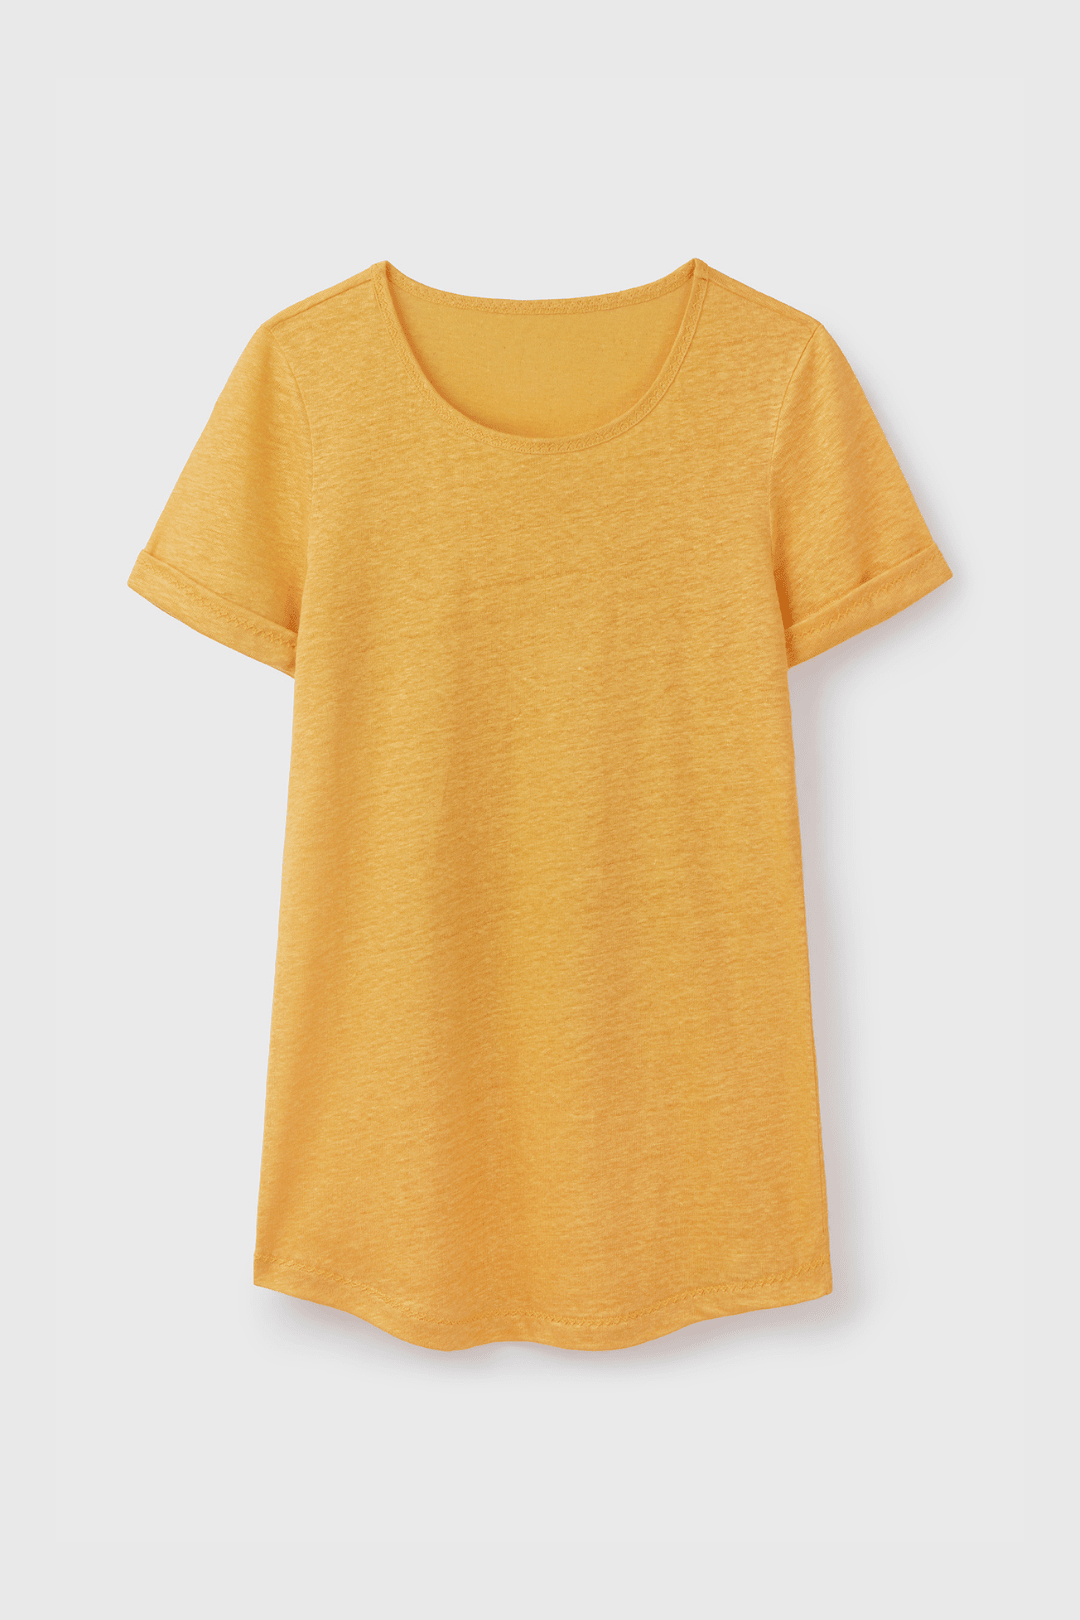 Women's Short Sleeve T-shirt Linen T-shirt